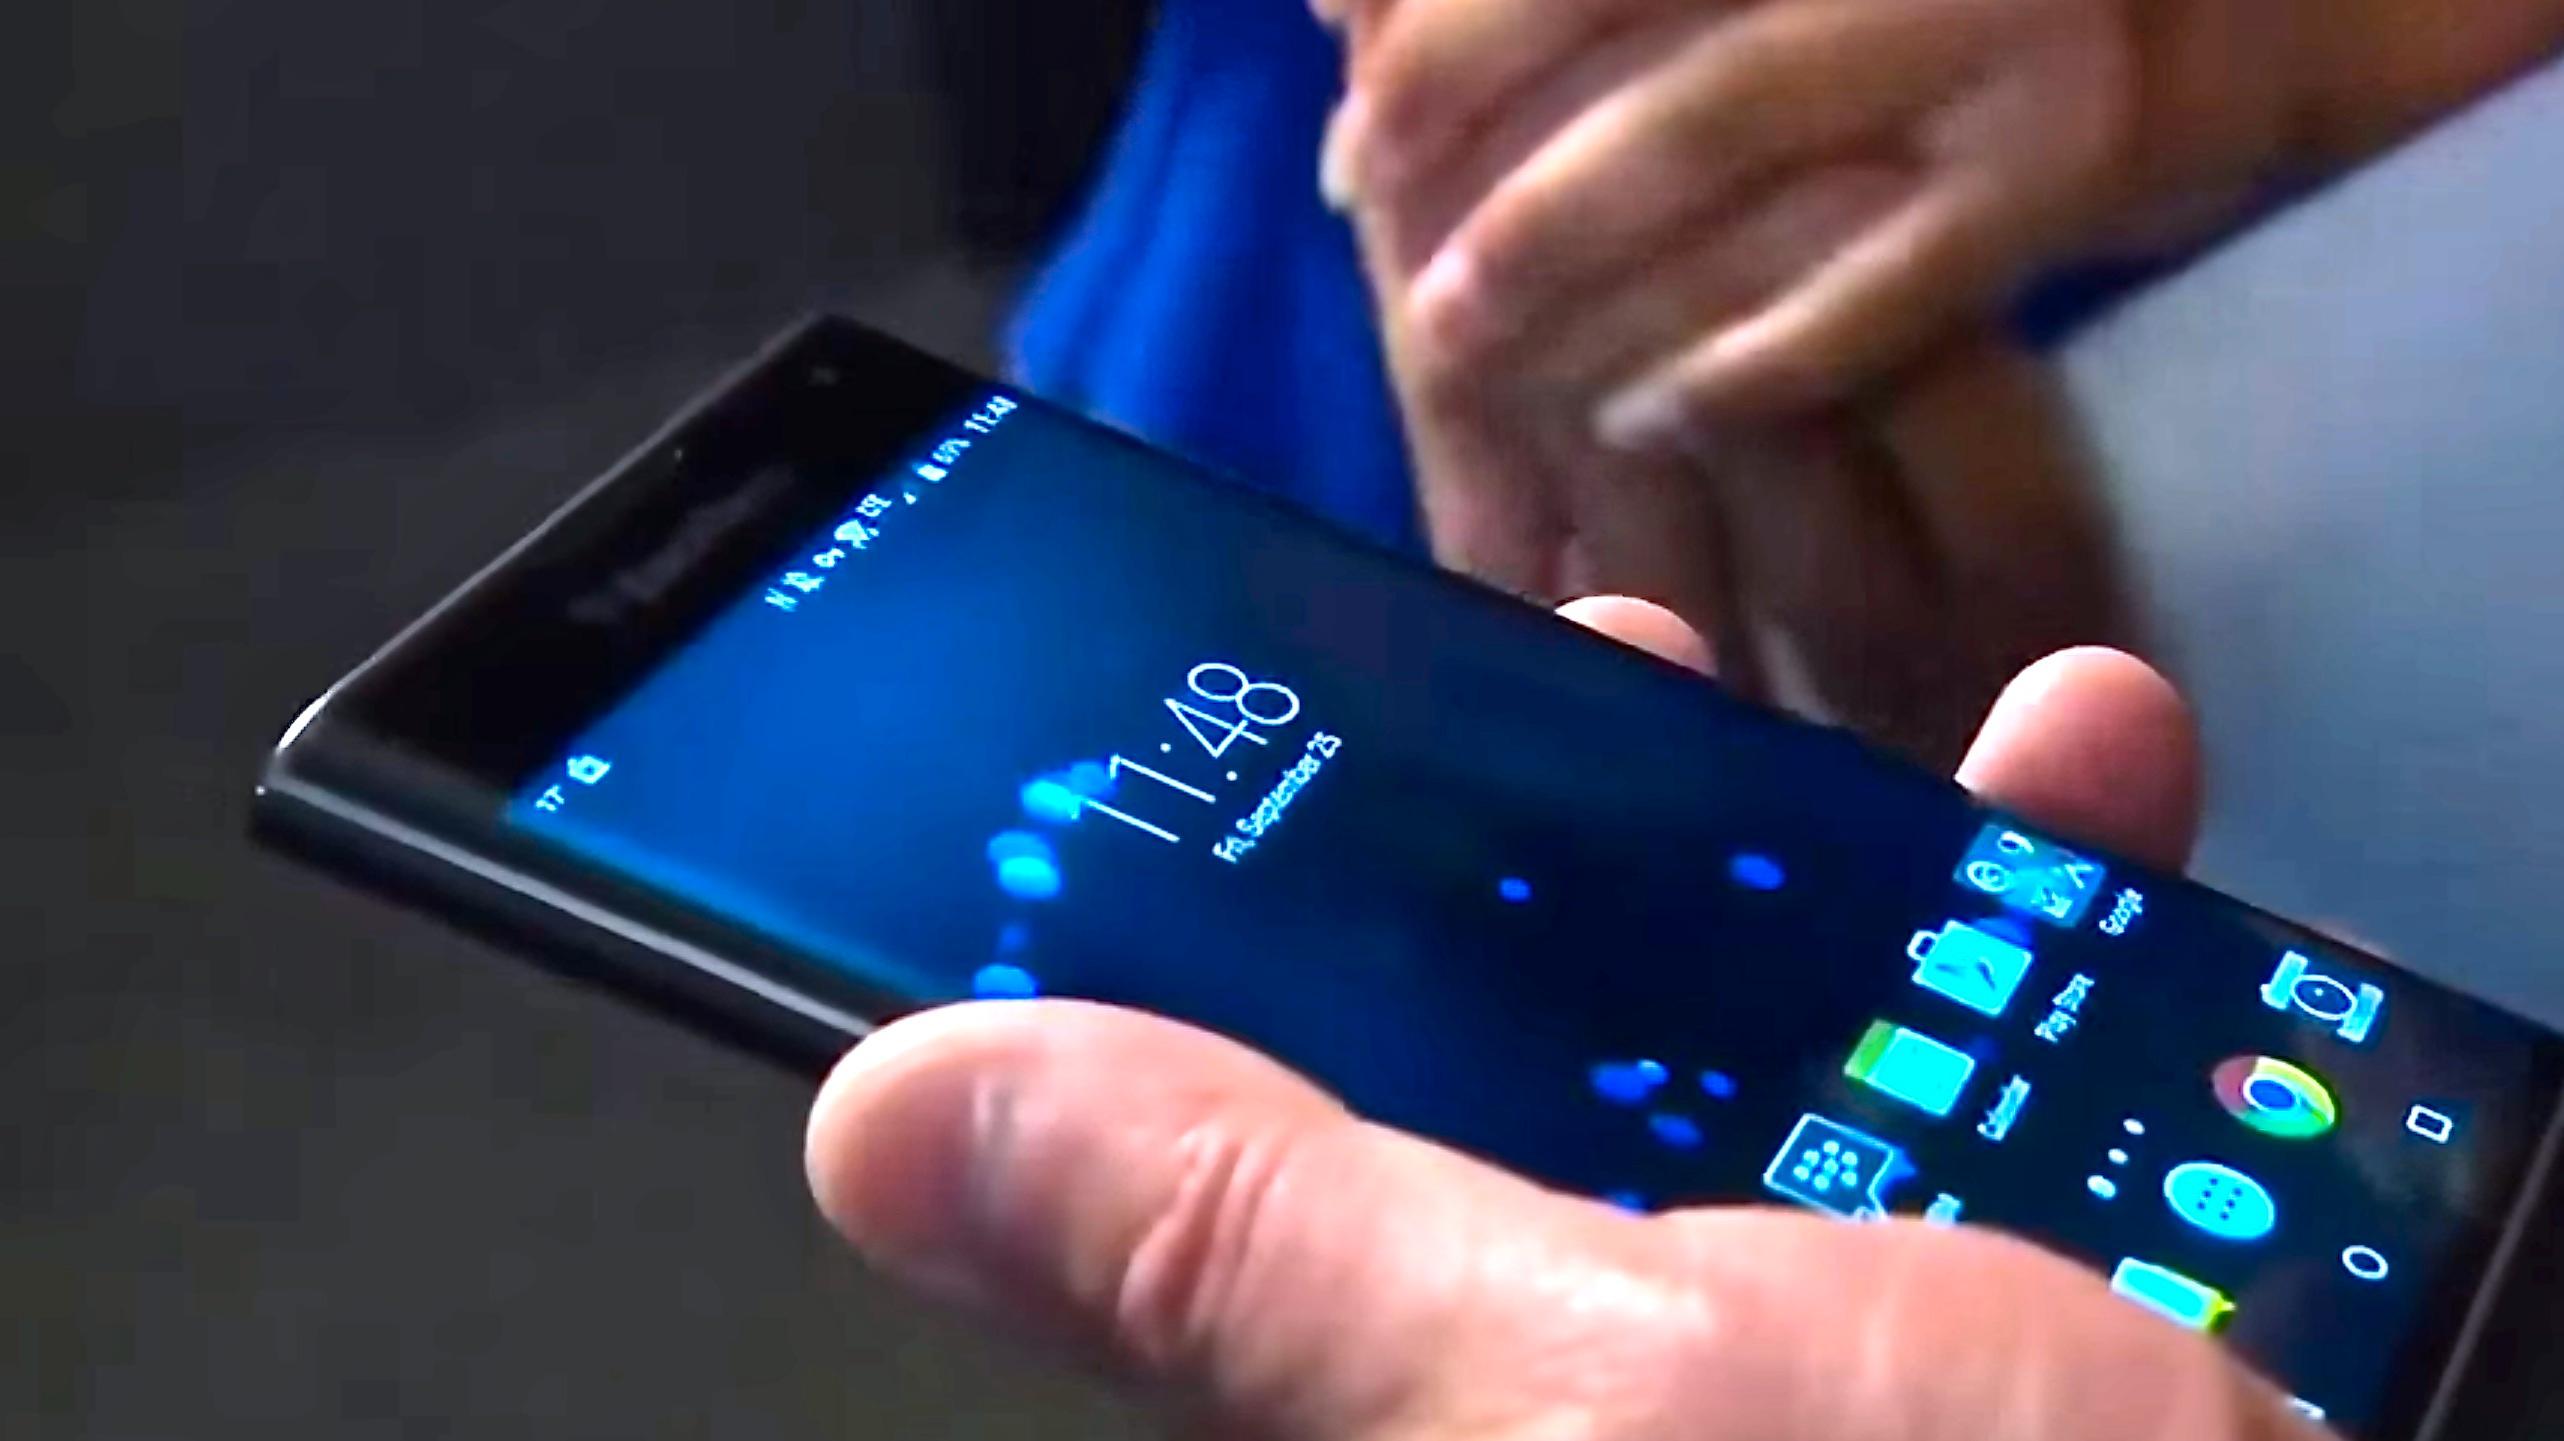 BlackBerrys Android-telefon med fysisk tastatur blir svindyr